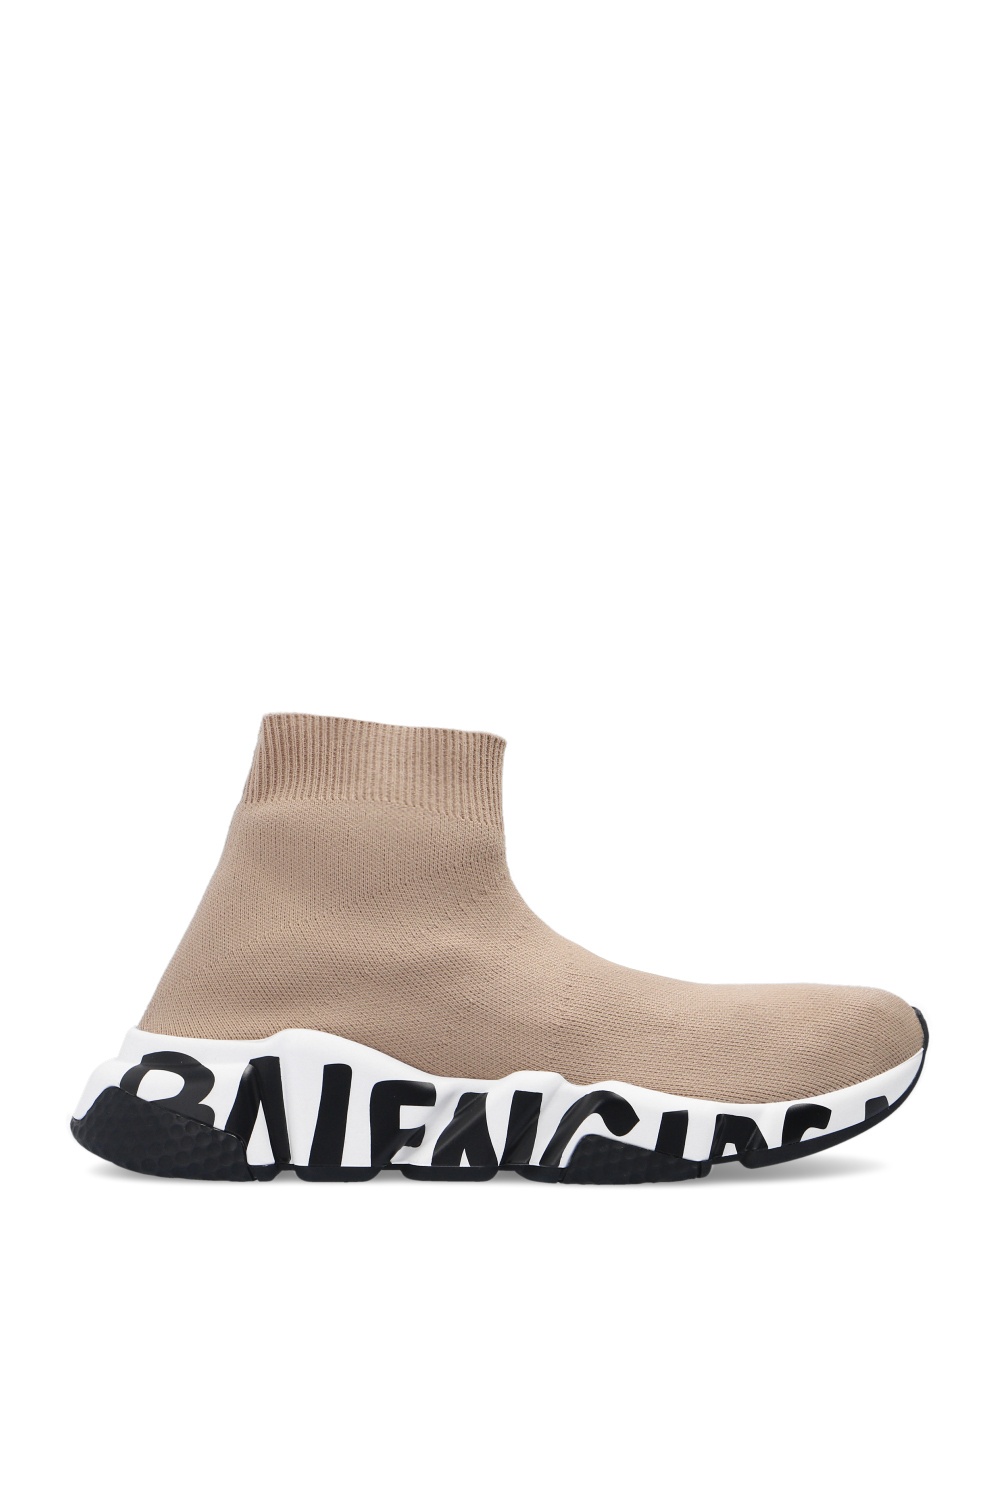 IetpShops | Reebok NPC UK2 sneakers in cream | Balenciaga 'Balenciaga Shoes  ID A12667039 Size | Women's Shoes